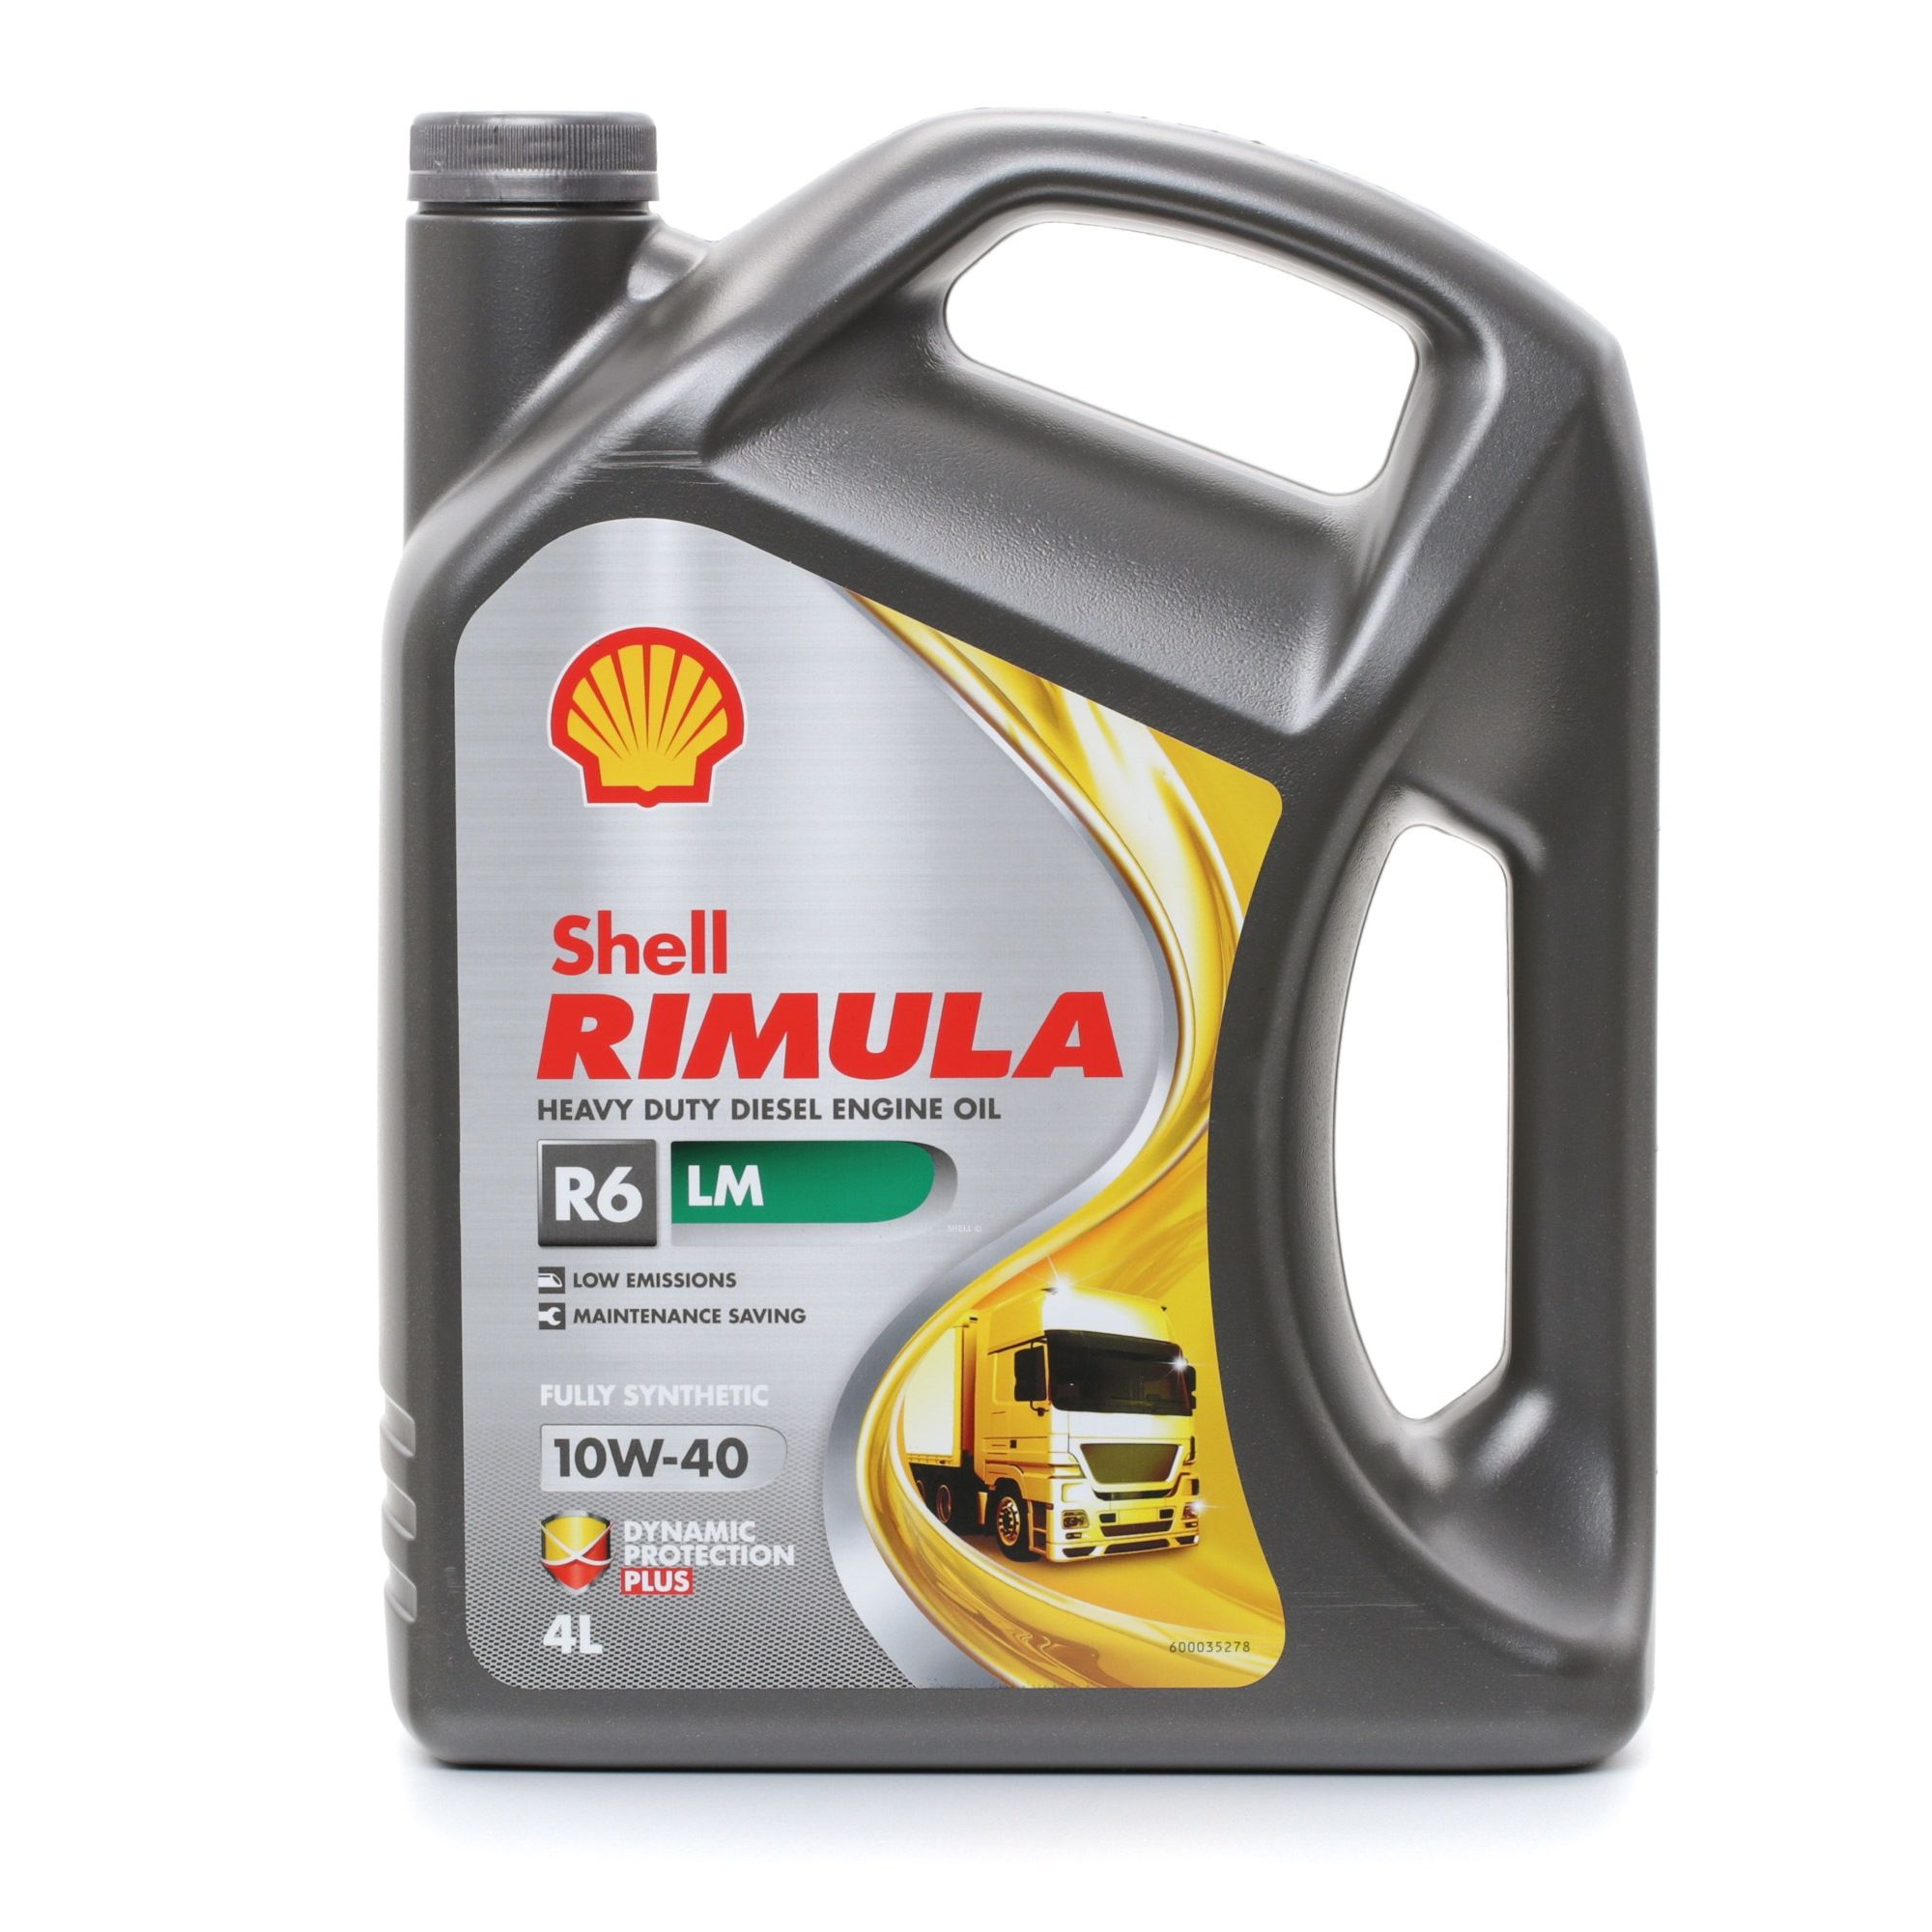 Kaufen Sie Motorenöl SHELL 550044889 Rimula, R6 LM 10W-40, 4l